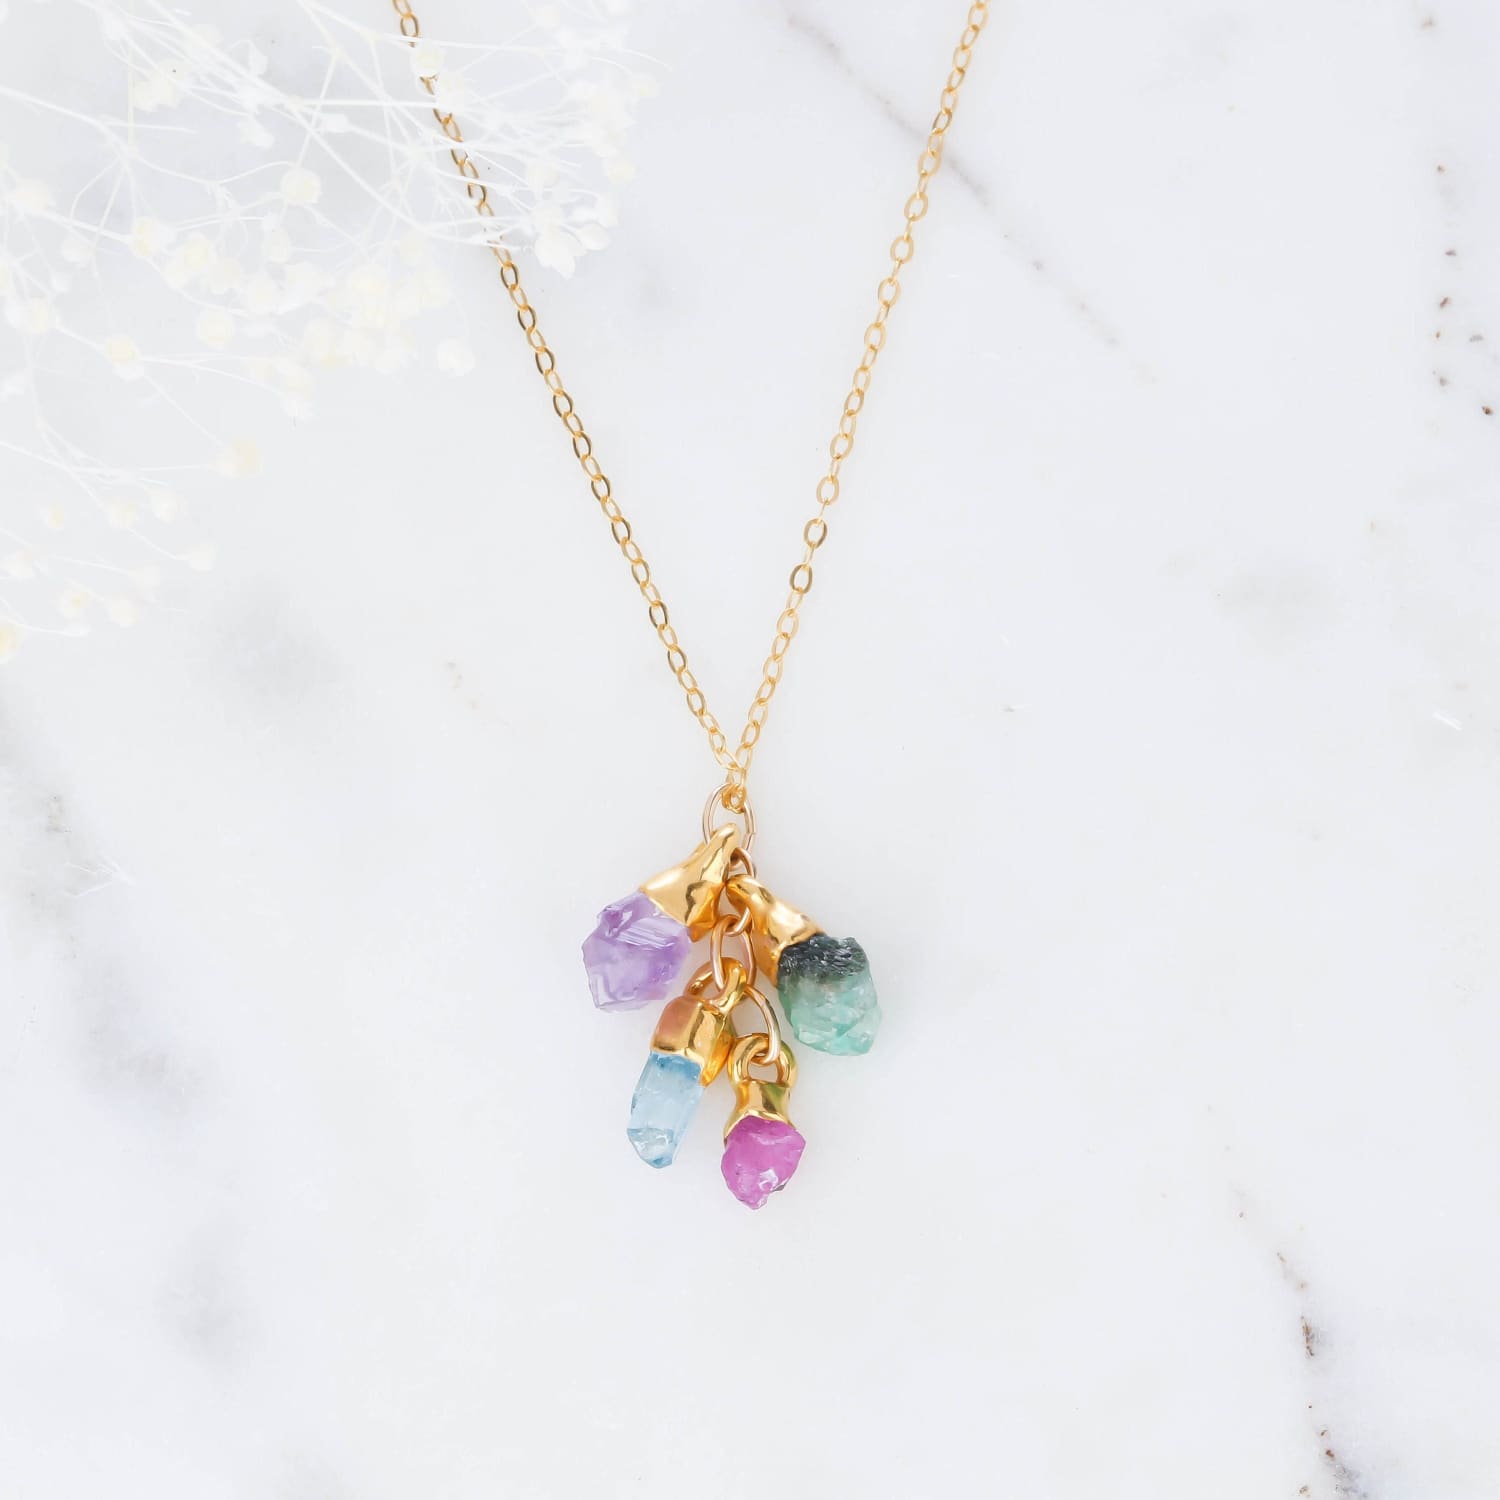 Personalized Dainty Raw Gemstone Birthstone Necklace Jewelry